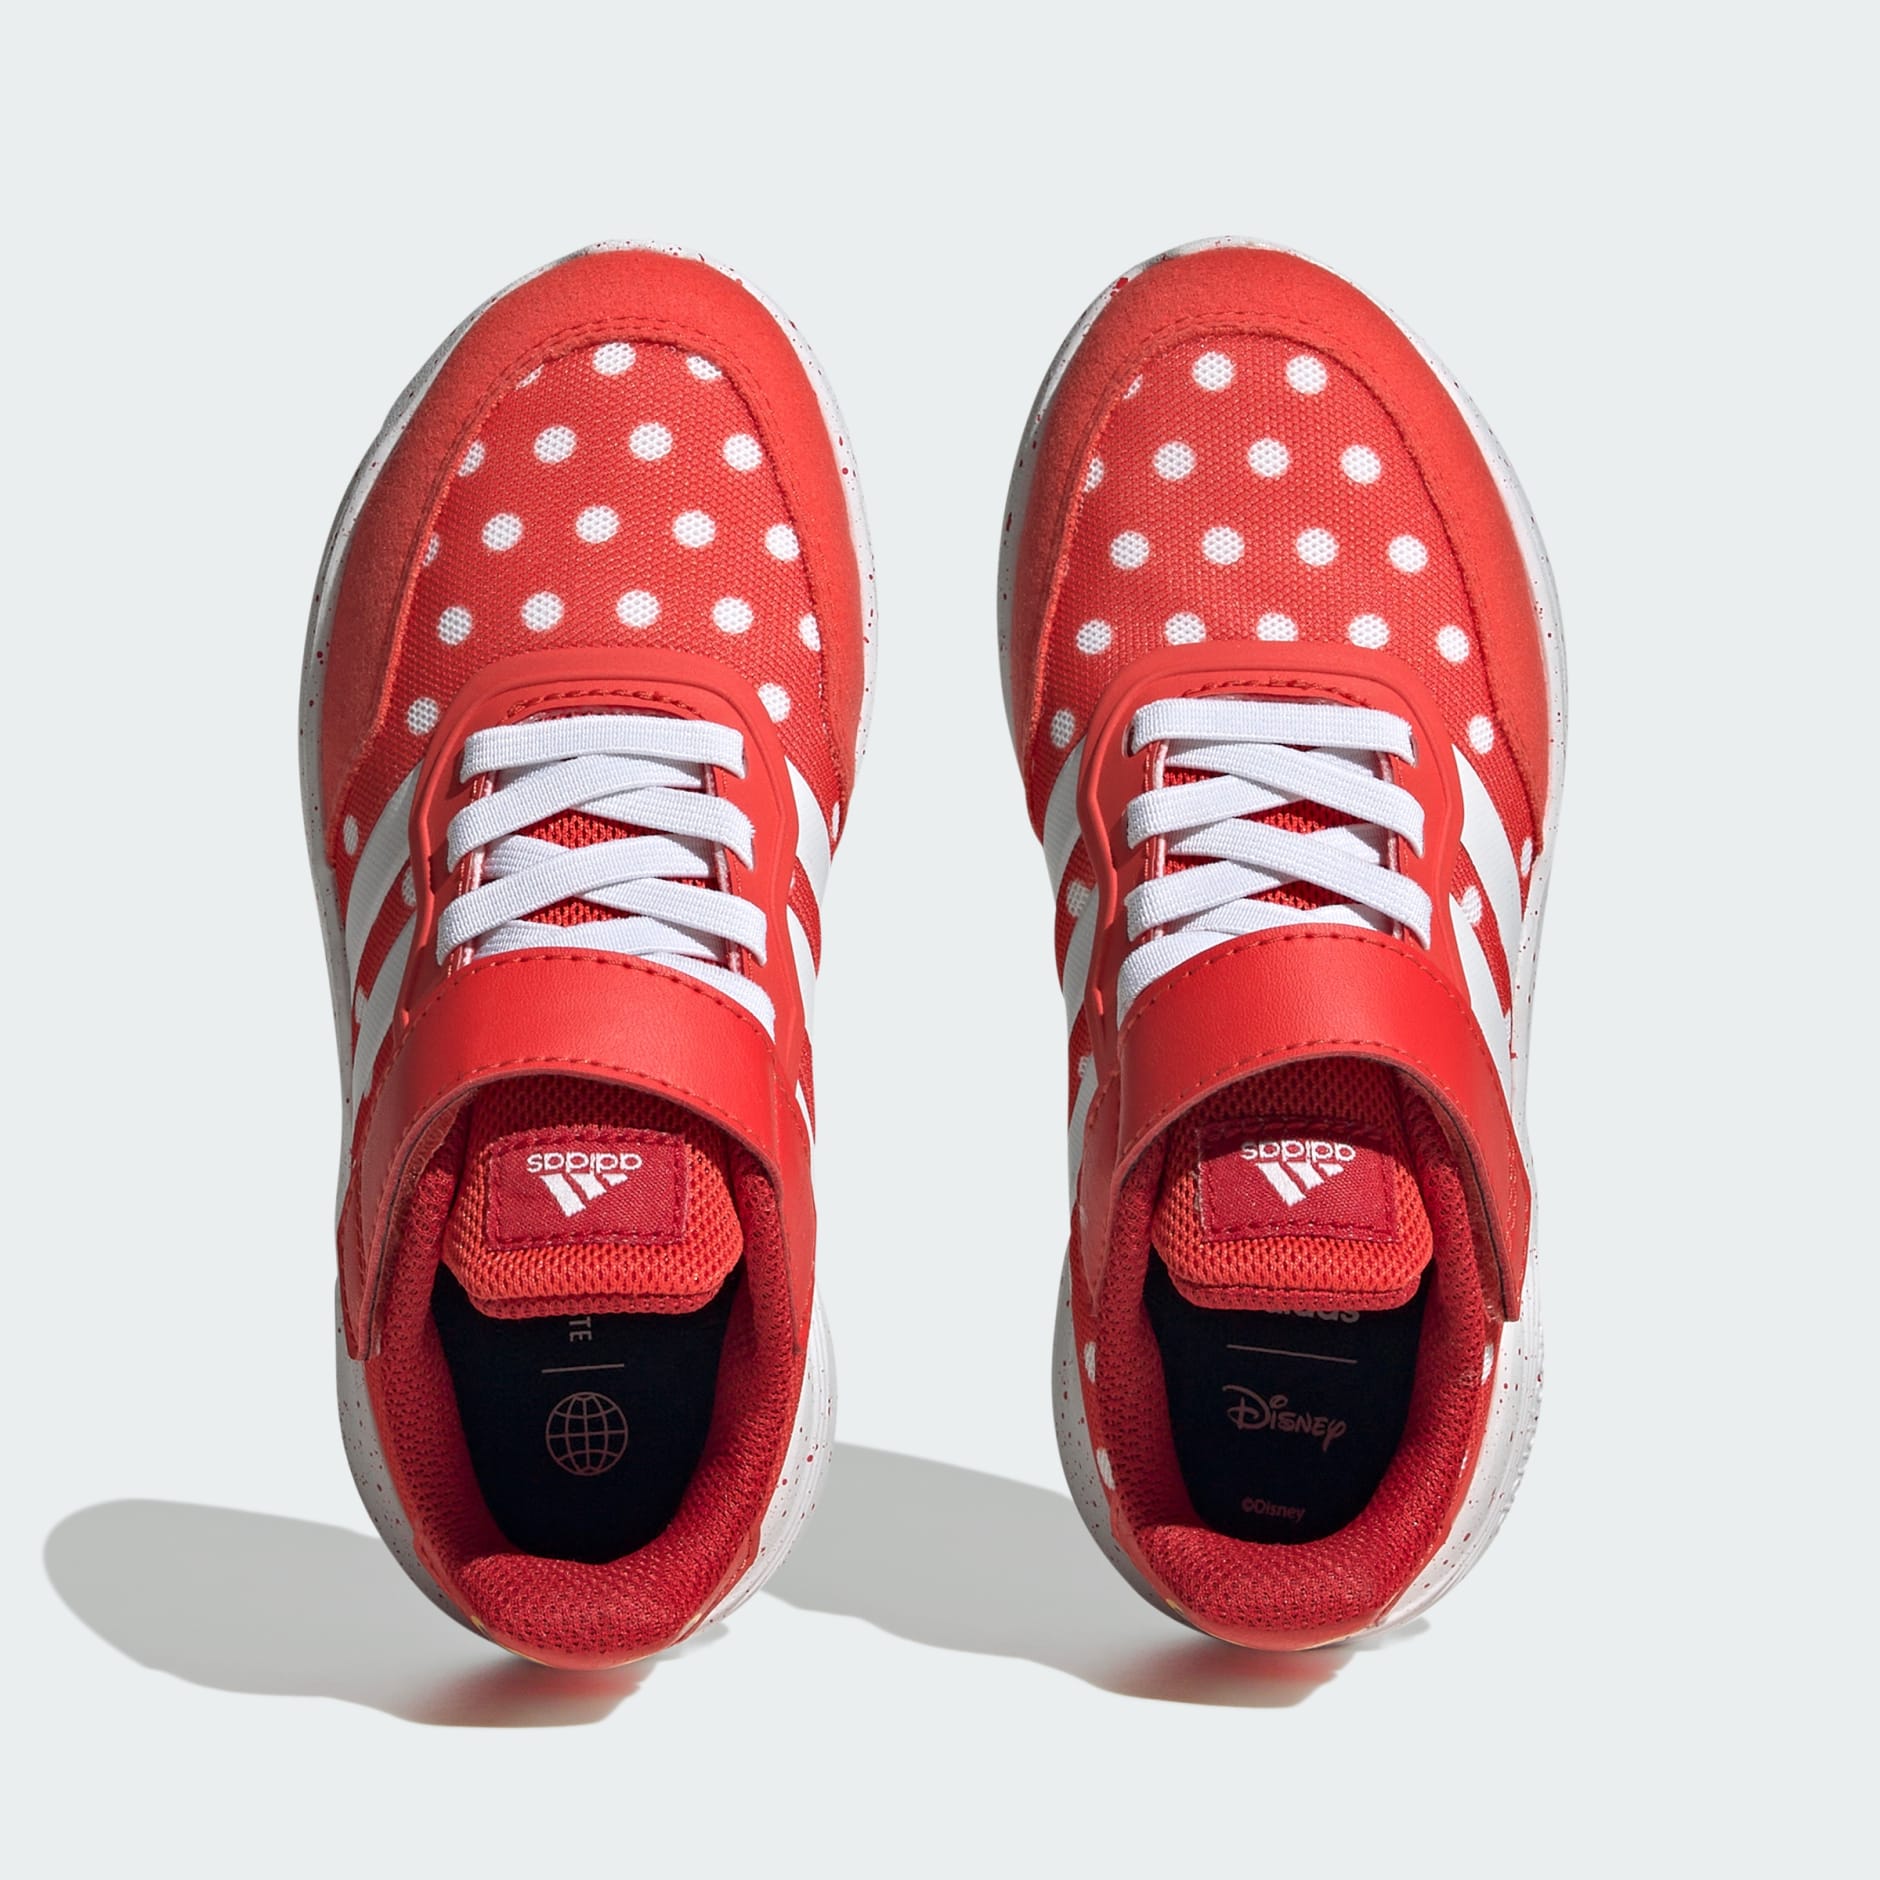 Buy adidas Originals Top Ten Low Rb Red Sneakers Shoes Online